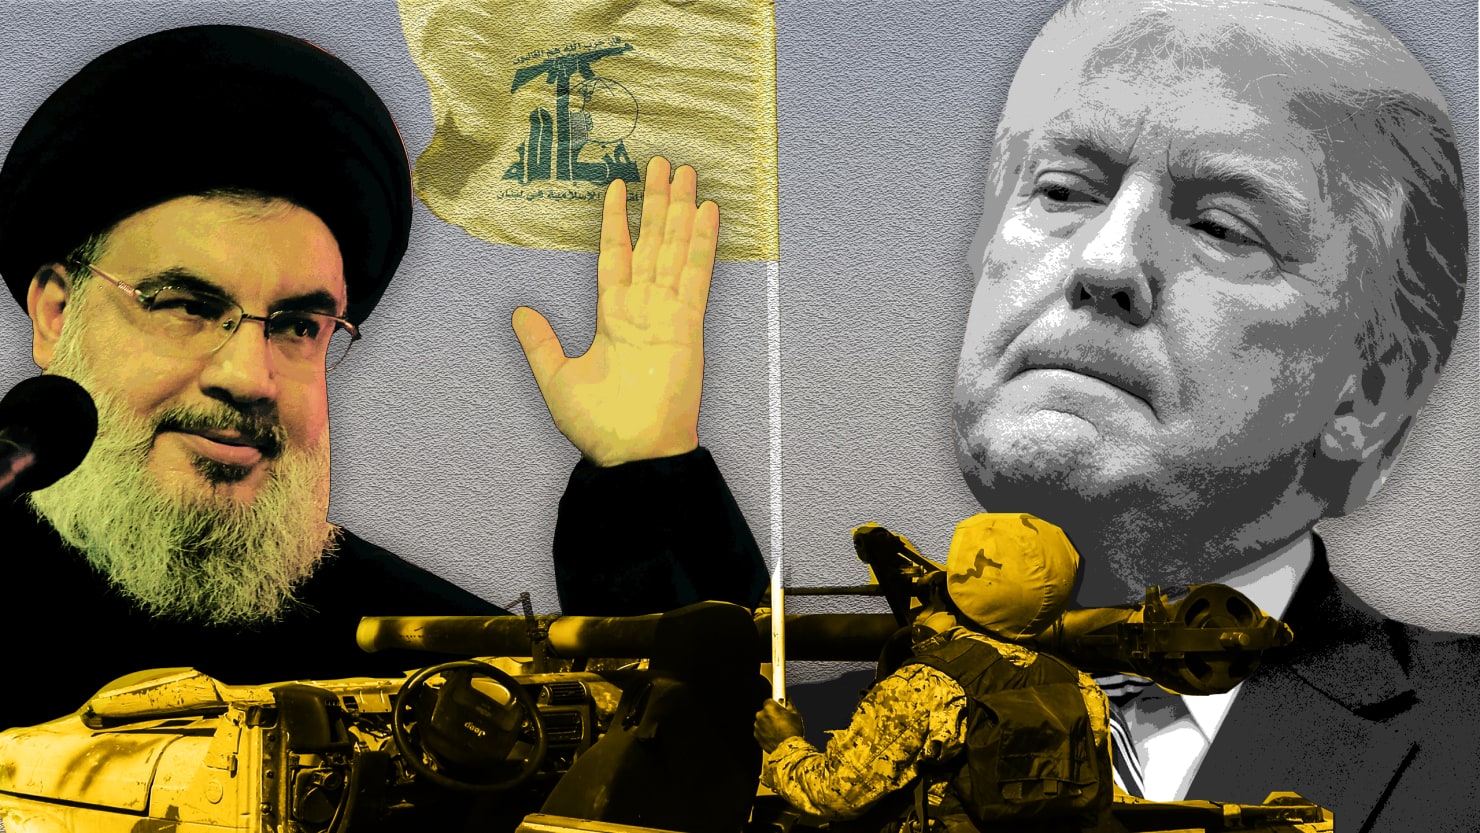 /news/170809-Rowerll-Hezbollah-trump-hero__wsgm0x.jpg